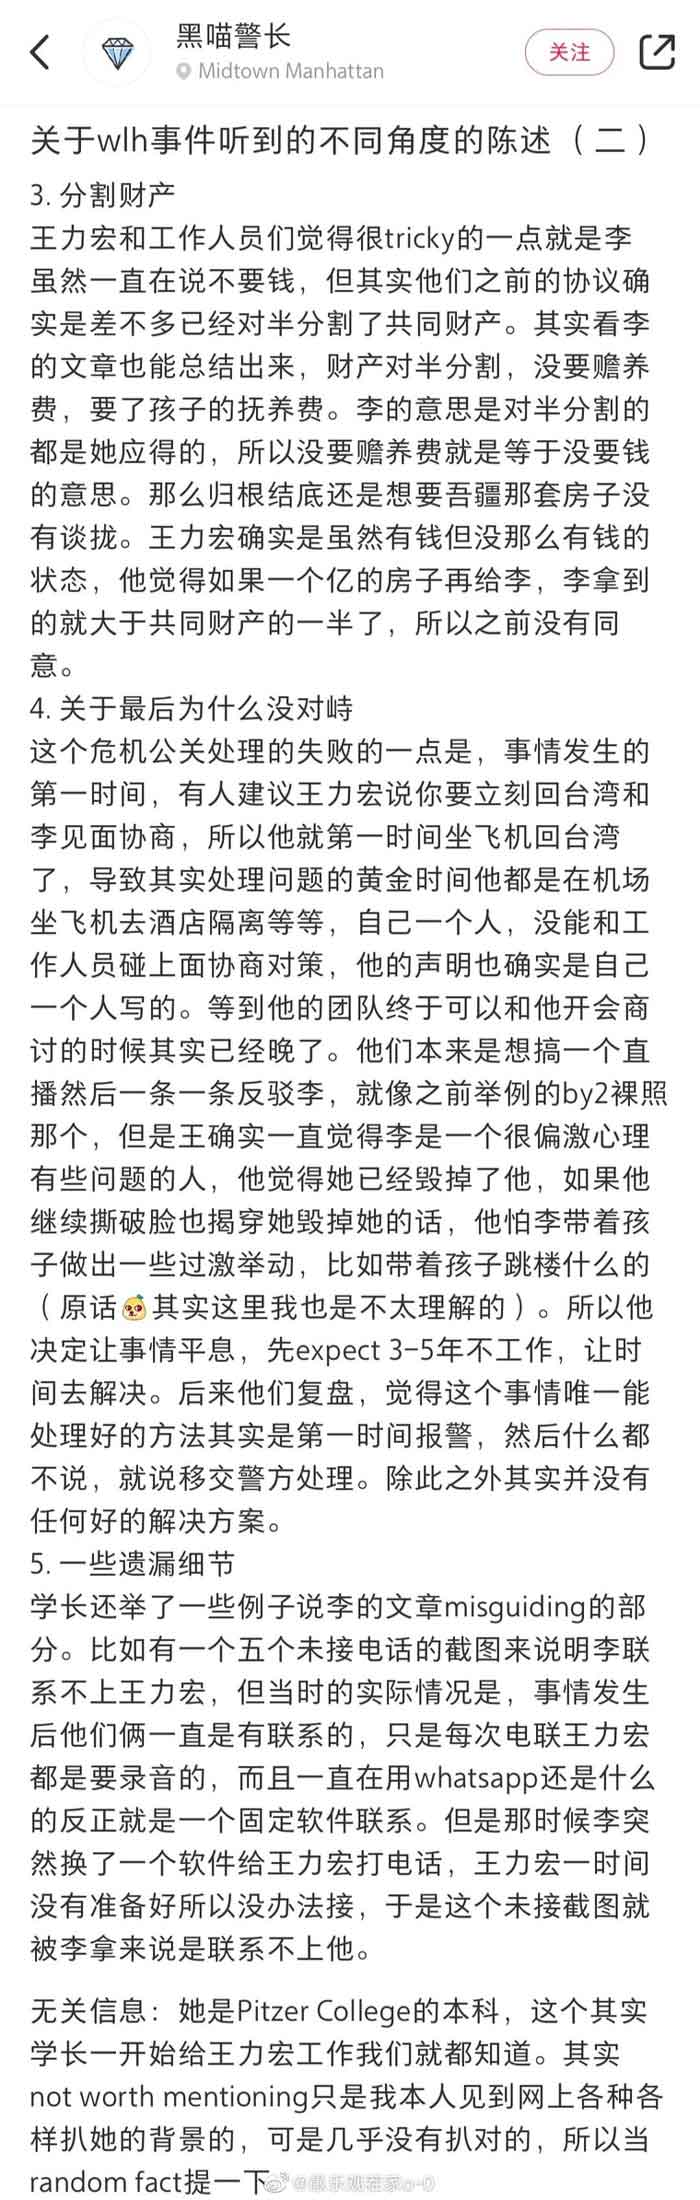 网友爆料王力宏离婚内幕。